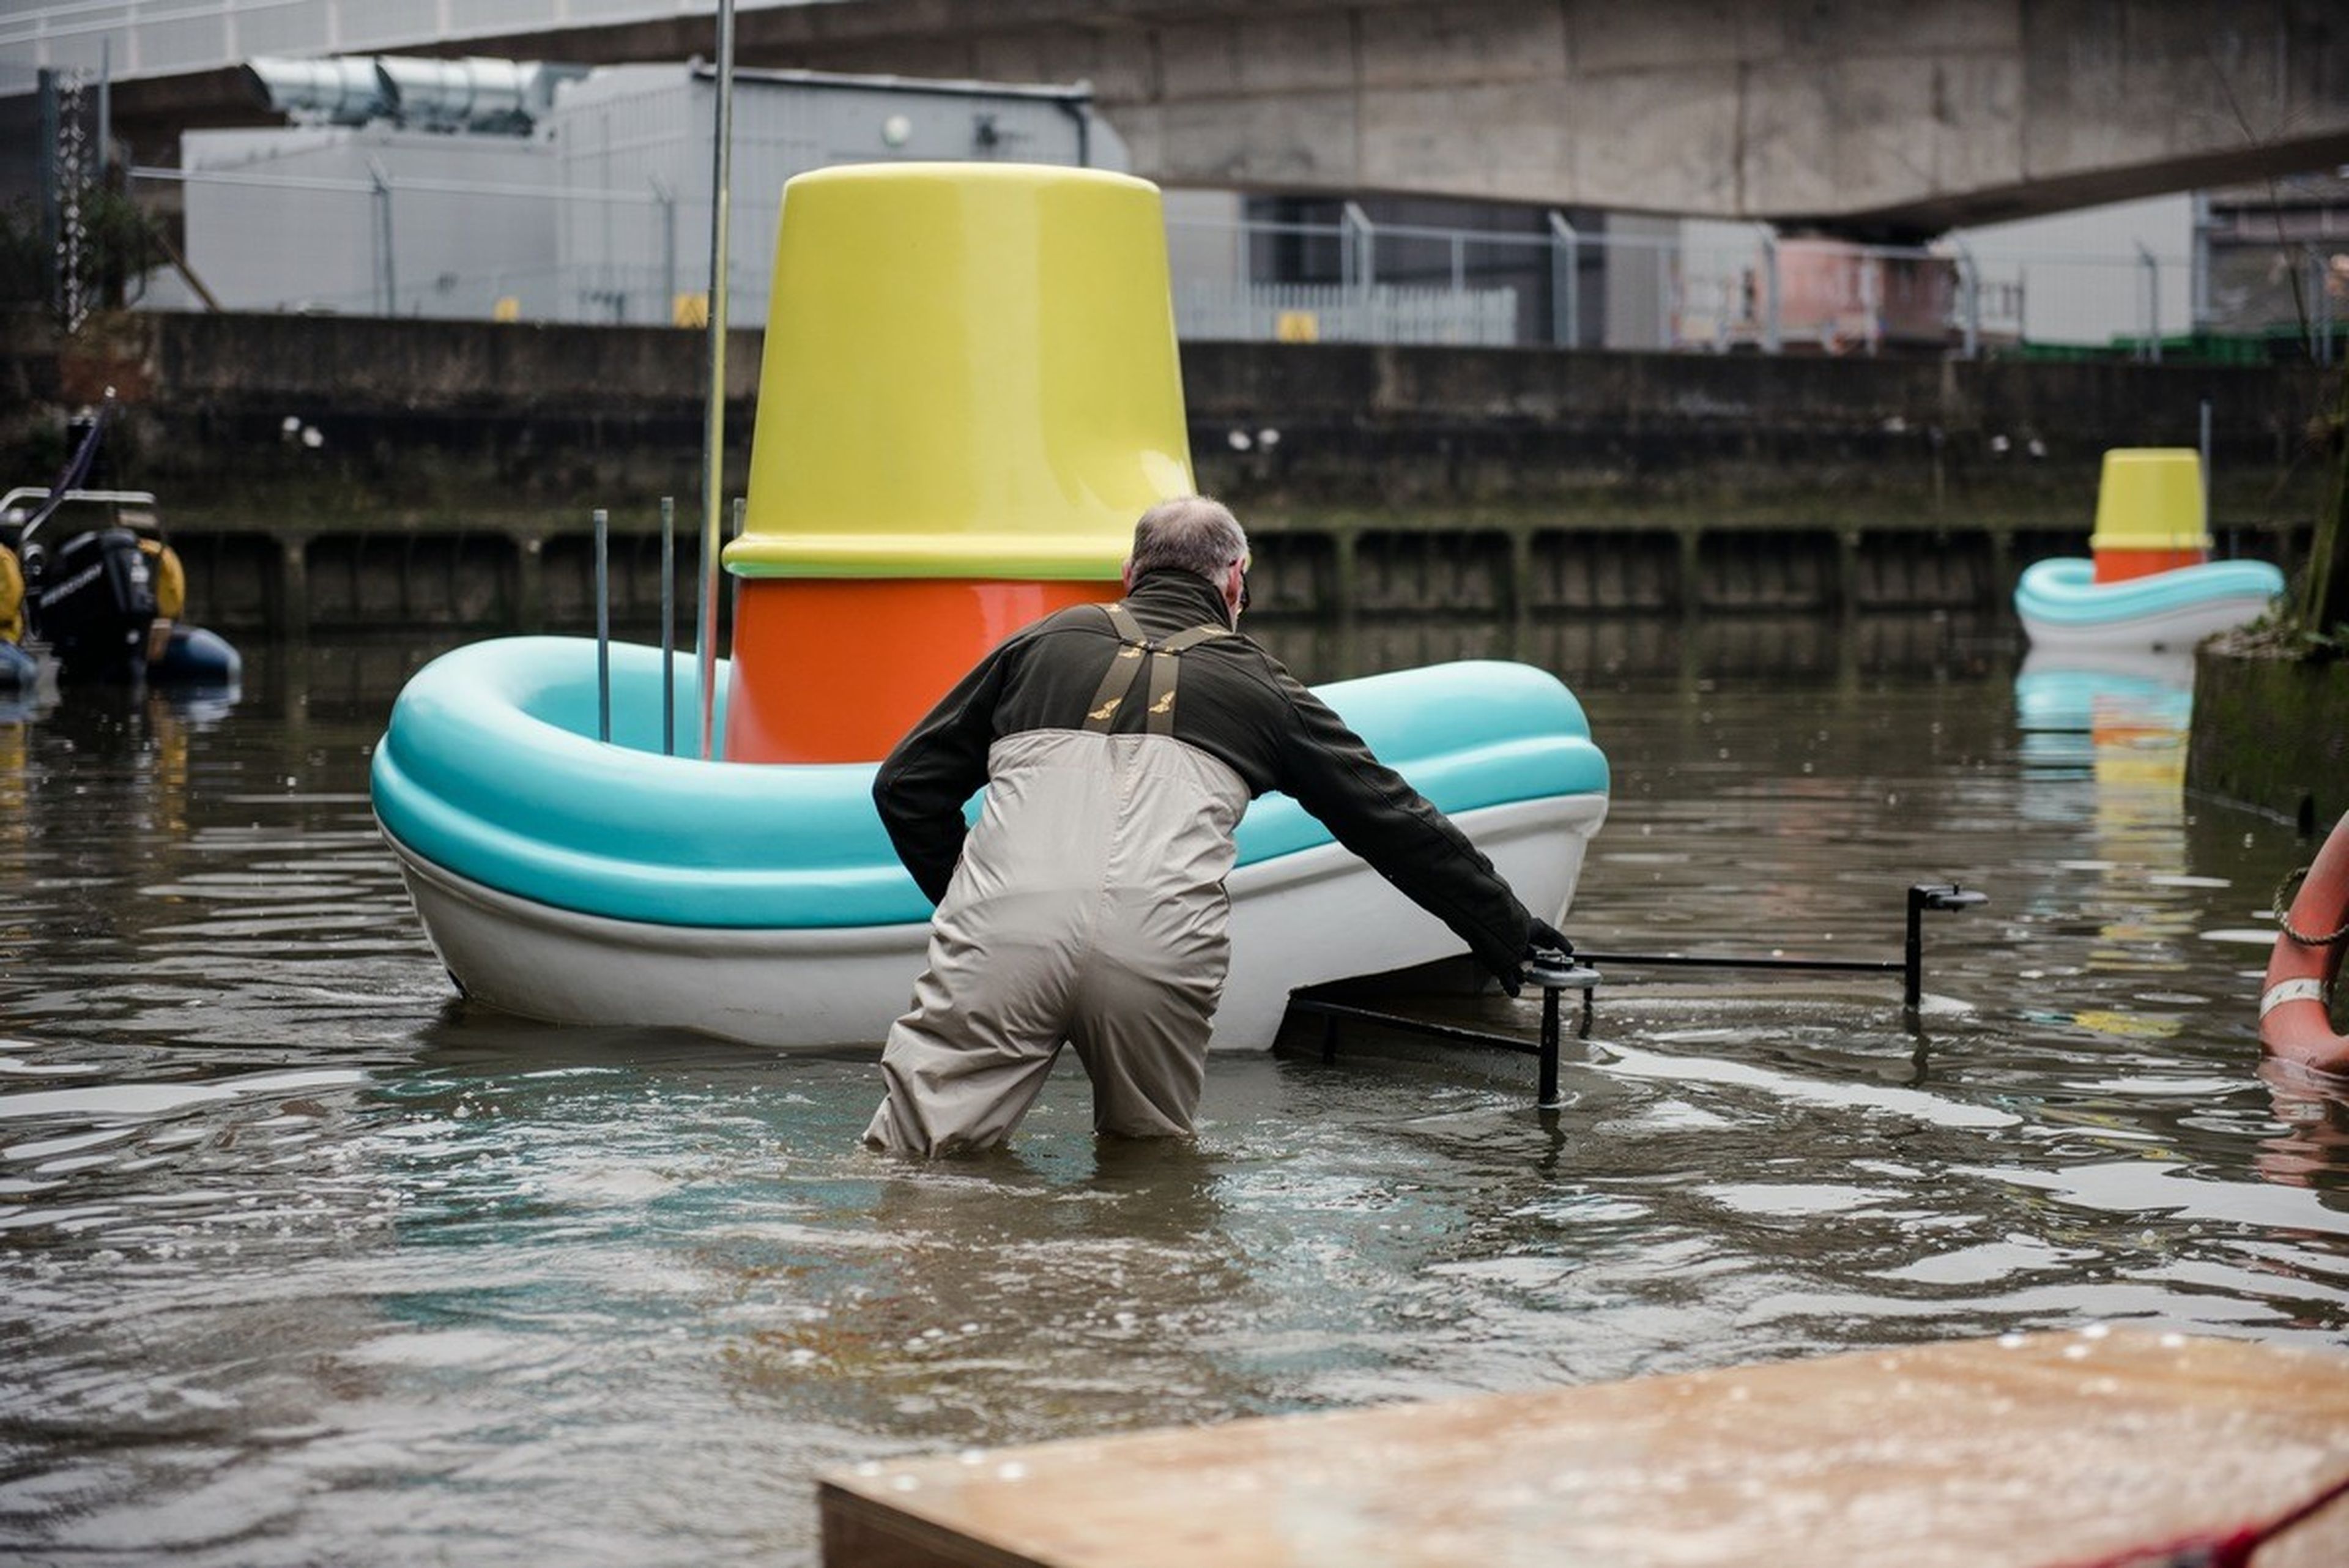 IKEA fabrica barcos de juguete gigantes para limpiar los ríos de basura